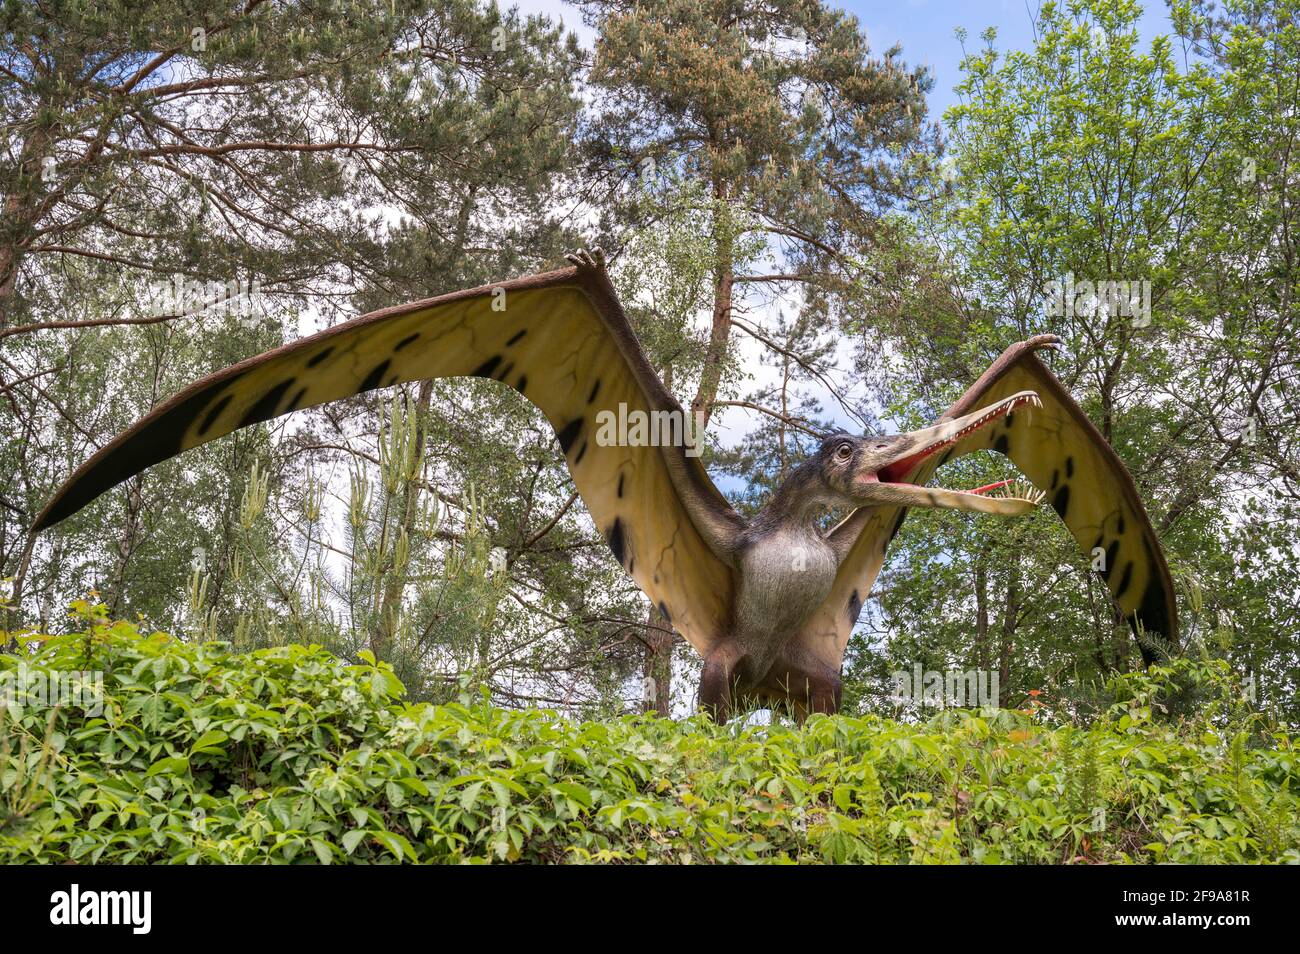 Pterosaur Cearadactylus comme modèle dans le Dinopark Münchehagen près de Hanovre. Wingspan environ 4m, poids environ 15kg, vivait il y a environ 105 millions d'années (Crétacé) en Amérique du Sud. Banque D'Images